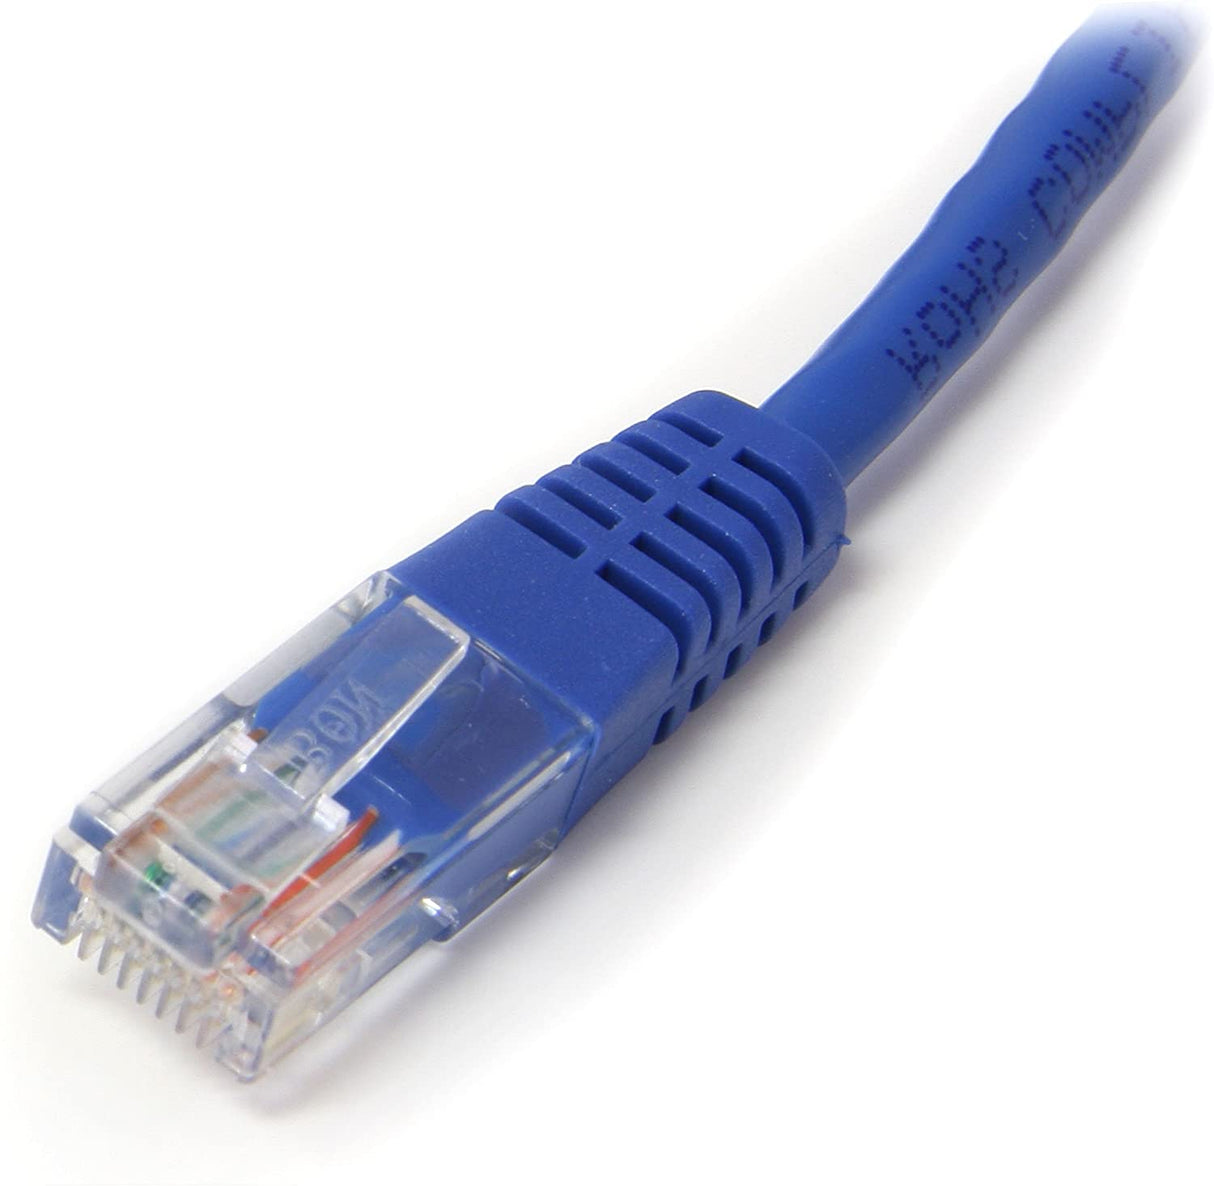 StarTech.com Cat5e Ethernet Cable - 10 ft - Blue - Patch Cable - Molded Cat5e Cable - Network Cable - Ethernet Cord - Cat 5e Cable - 10ft (M45PATCH10BL) 10 ft / 3m Blue